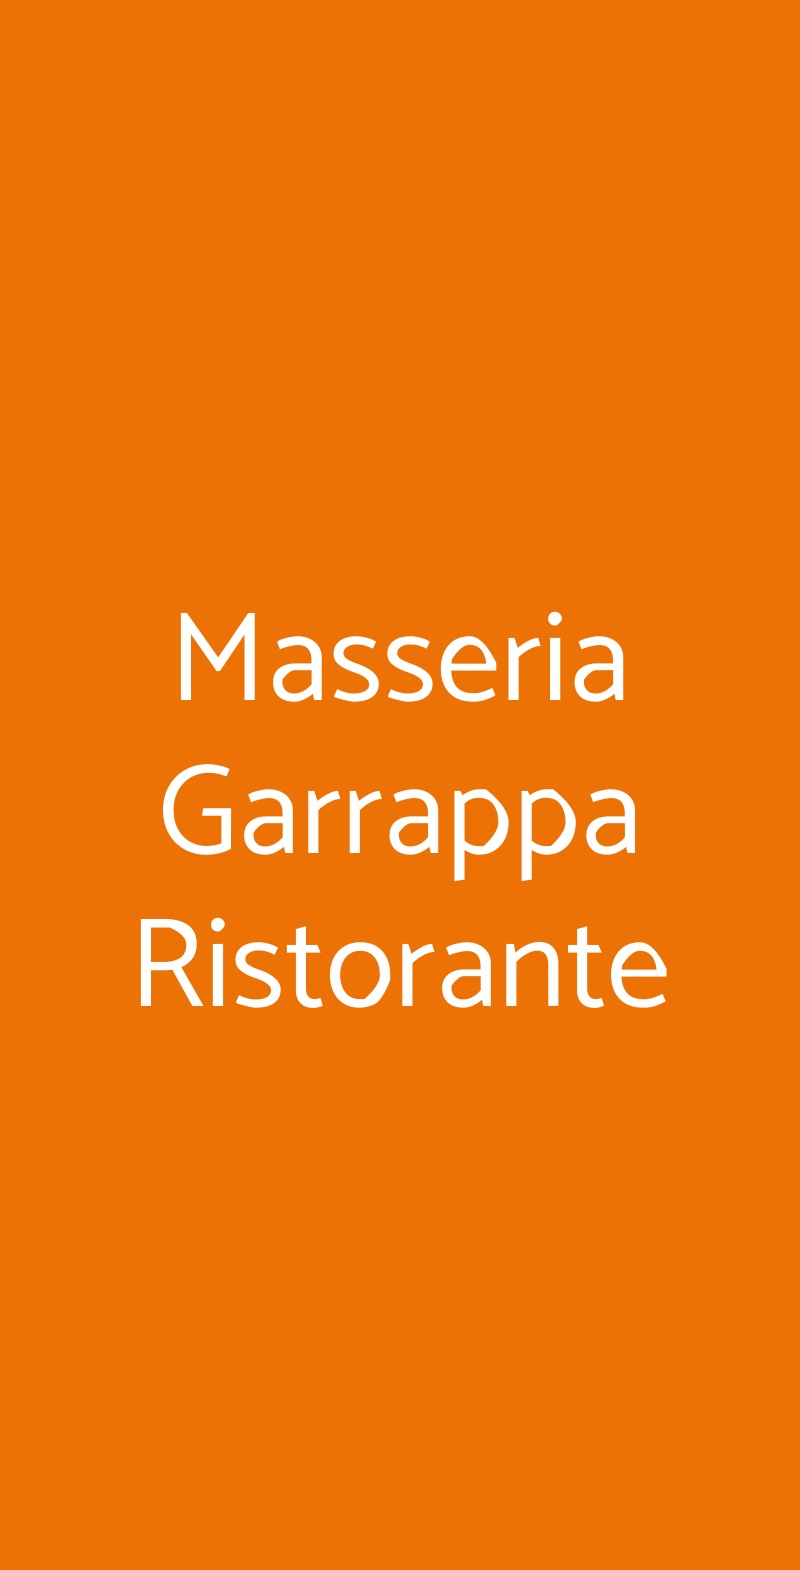 Masseria Garrappa Ristorante Monopoli menù 1 pagina